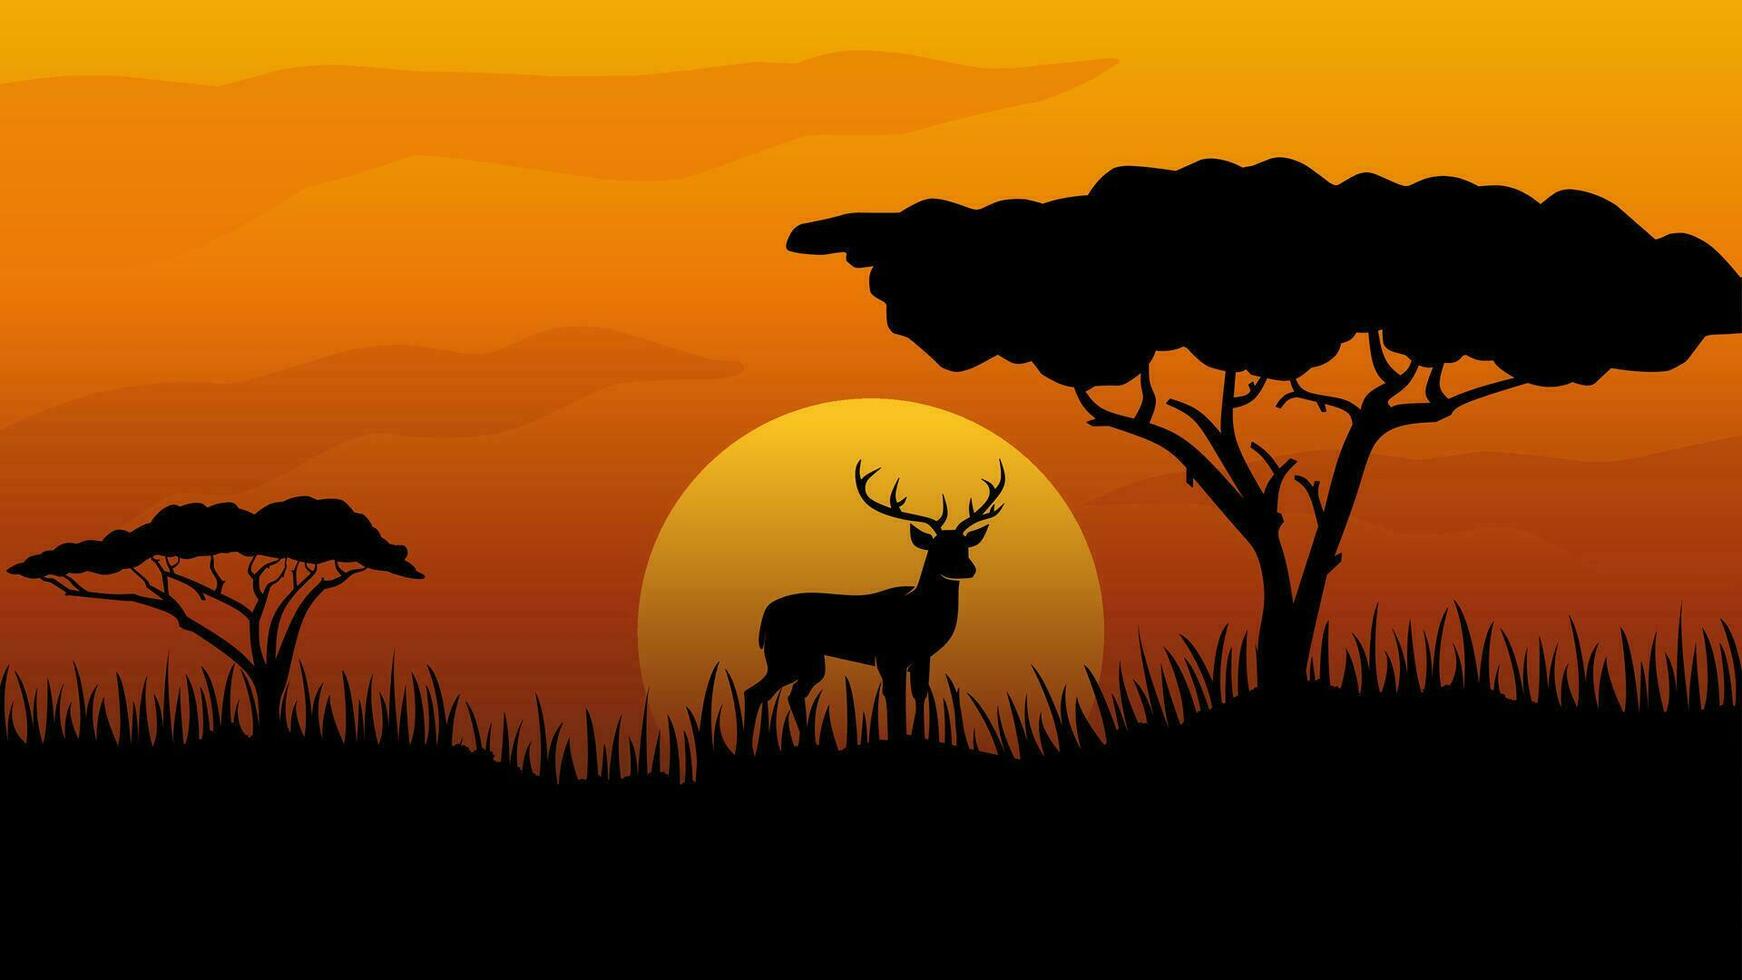 Tierwelt Landschaft Vektor Illustration. Tierwelt Afrika Savanne von Giraffe mit afrikanisch Baum und Sonnenuntergang Himmel. Tierwelt Silhouette Landschaft zum Hintergrund, Hintergrund, Anzeige oder Landung Seite